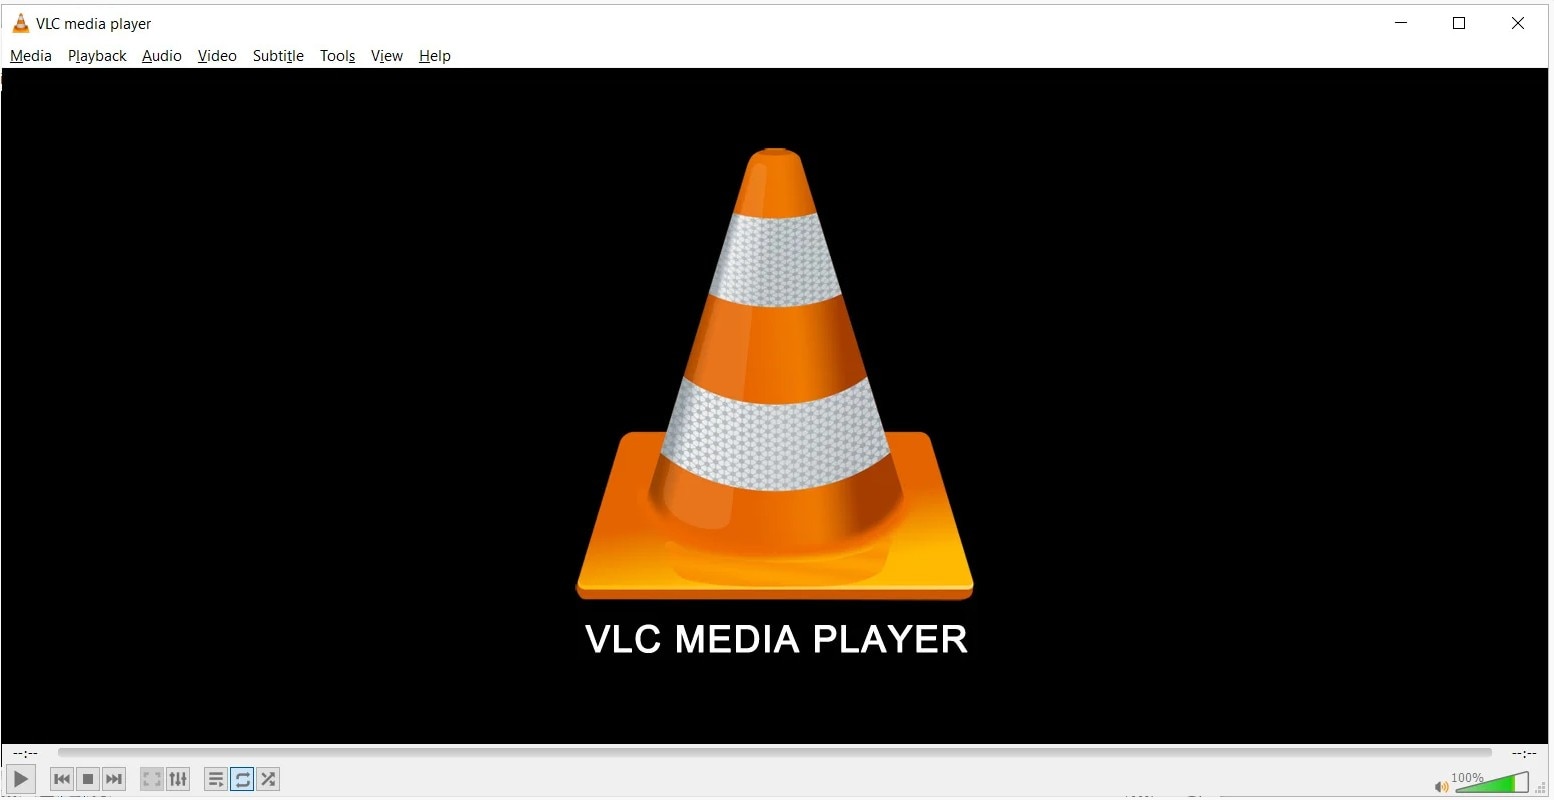 vlc media player para reproduzir vídeos m4v em qualquer dispositivo